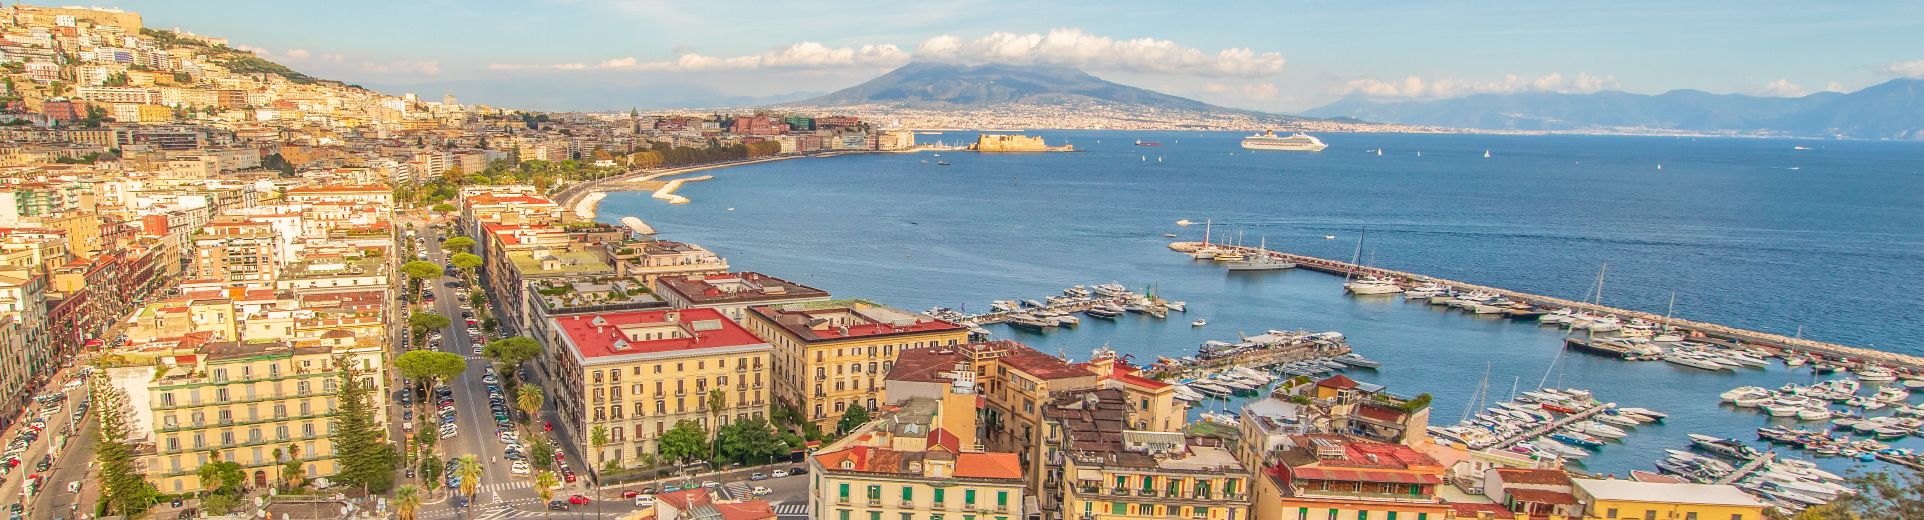 Napoli: storia, arte, cultura e tradizioni